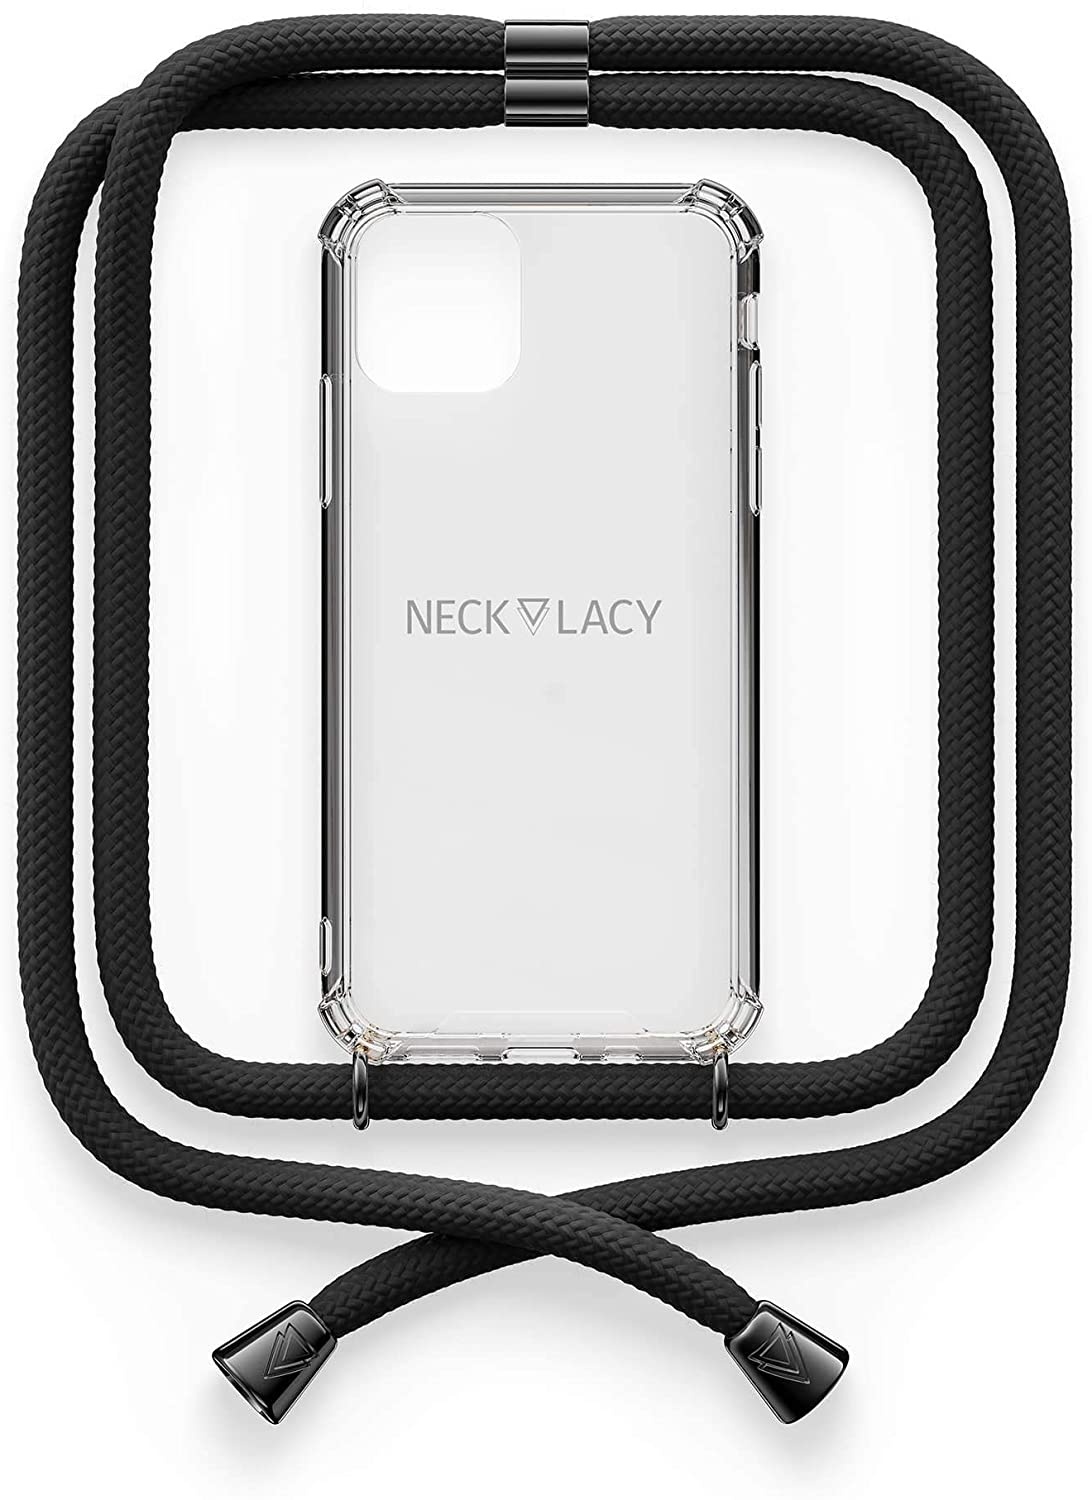 NECKLACY Handykette Handyhülle zum umhängen - für iPhone 11 Pro - Case / Handyhülle mit Band zum umhängen - Trageband Hals mit Kordel - Smartphone Necklace, All Black